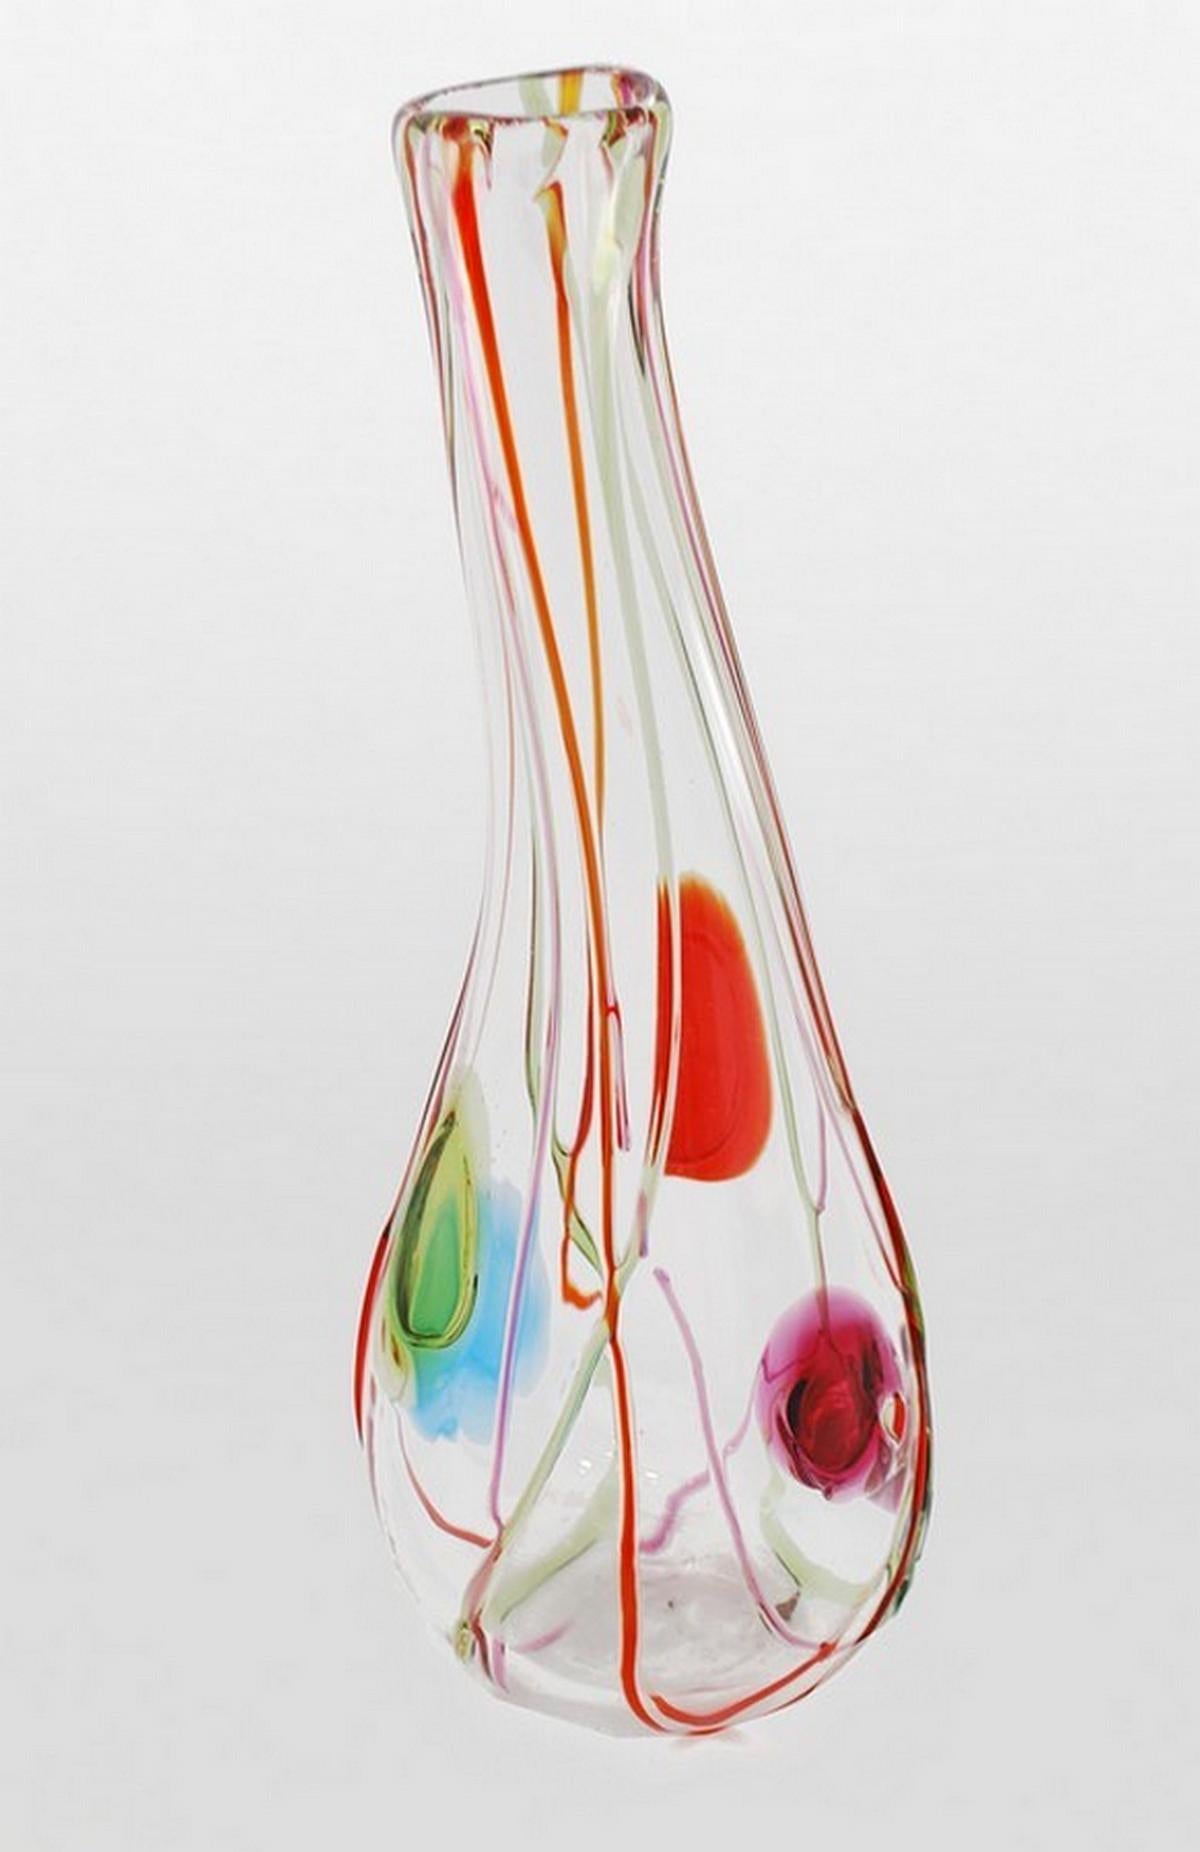 Artistics/One : Salviati

Informations complémentaires : Salviati est un fabricant de verre de renommée mondiale basé à Murano depuis 1859.

Marquage(s) ; notes : Label Salviati

Pays d'origine ; matériaux : Italie ; verre

Dimensions : 20″h,